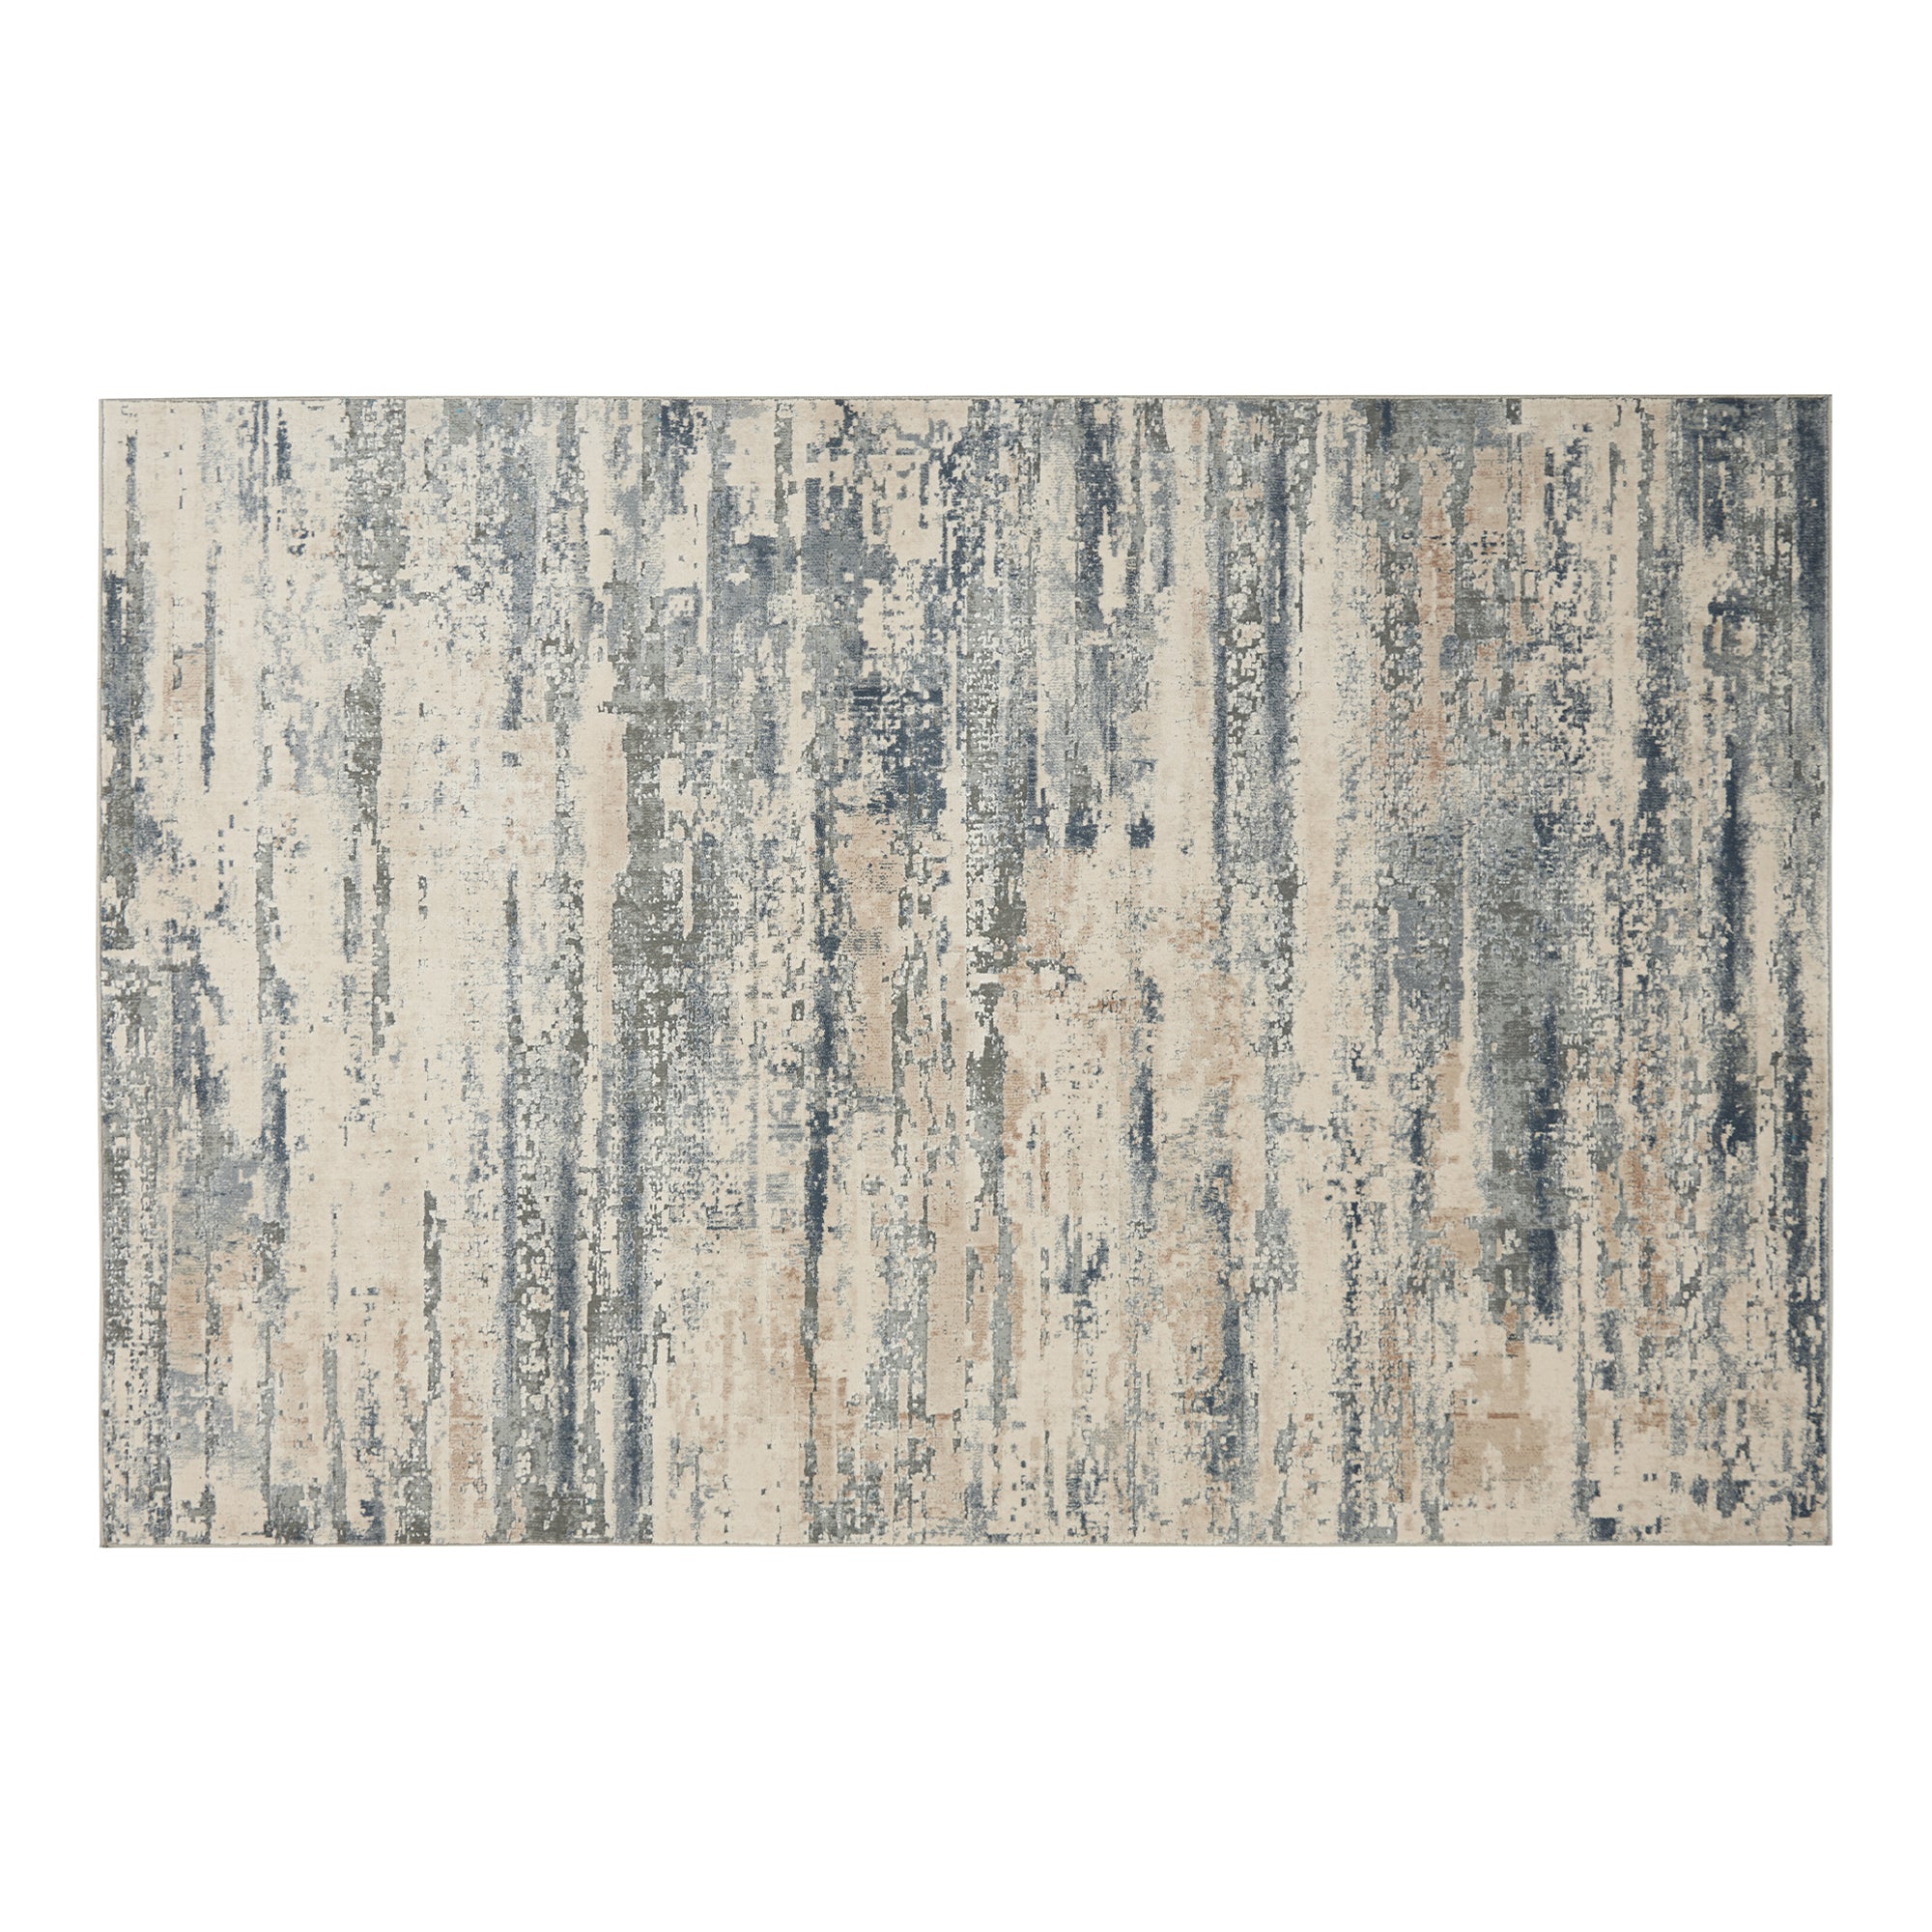 Rustic Textures - Rug RUS04 Beige/Grey 120cm x 180cm